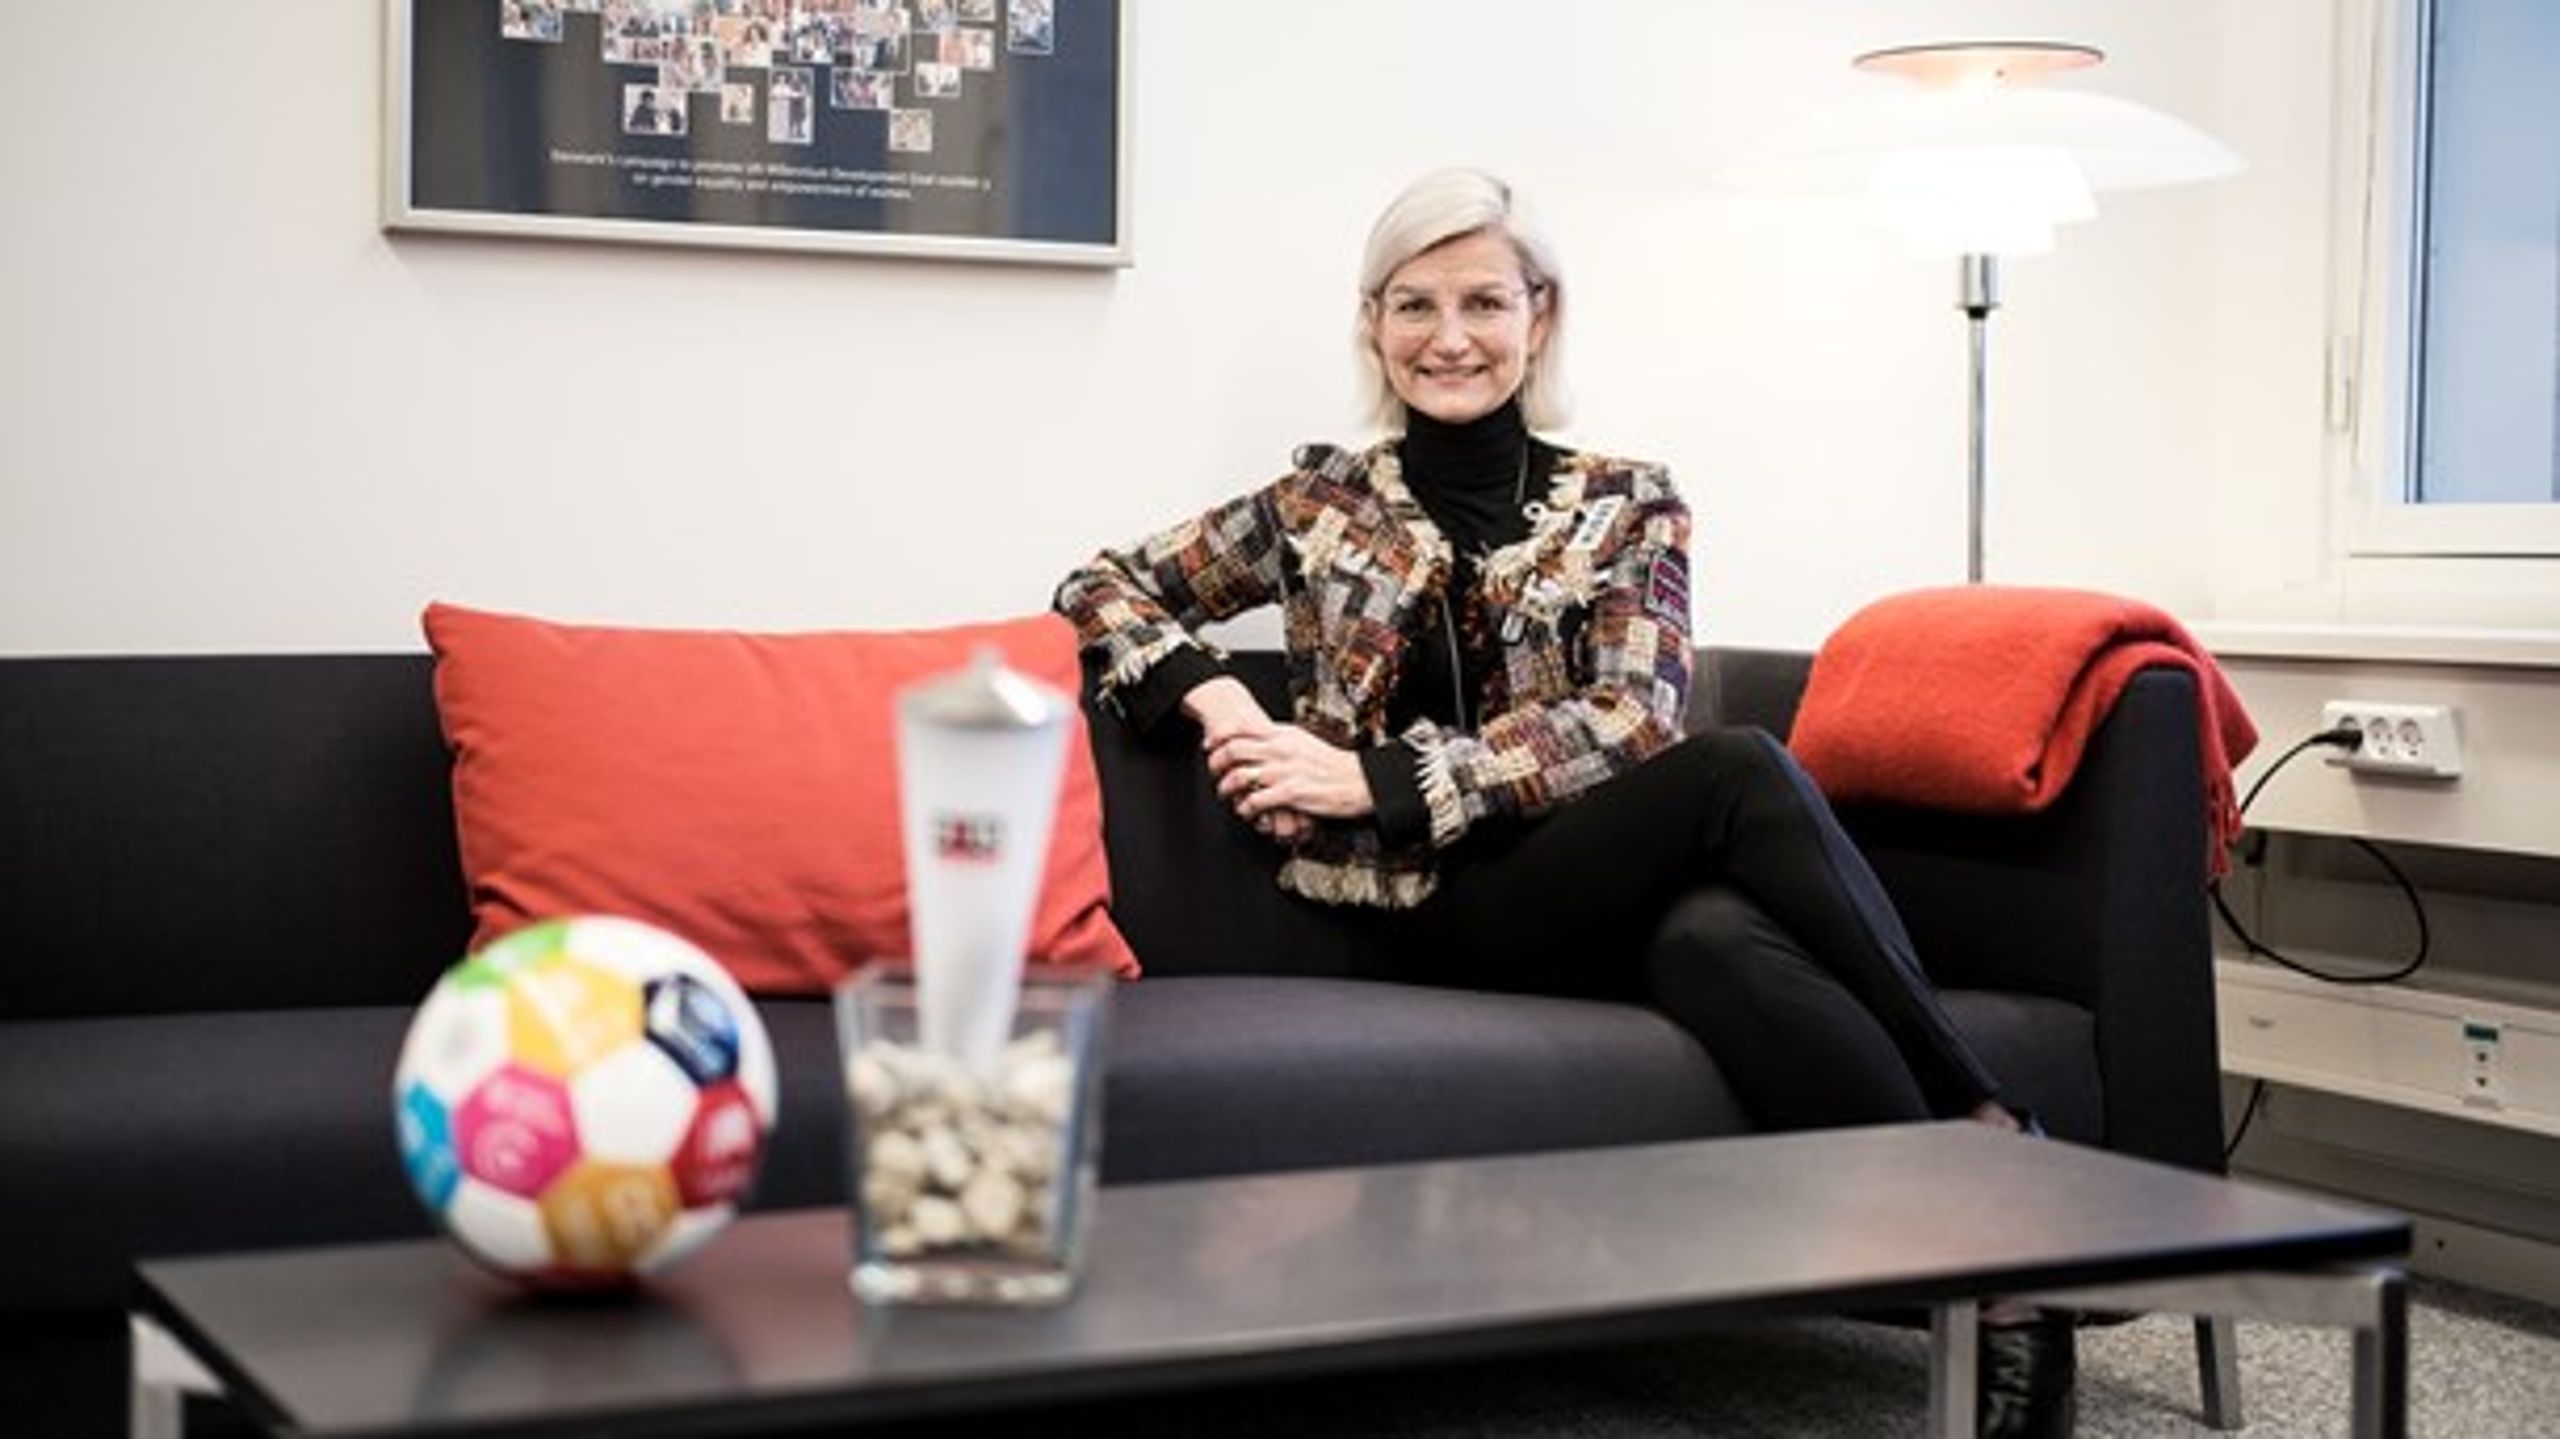 Udviklingsminister Ulla Tørnæs (V) på sit ministerkontor på toppen af Udenrigsministeriet. Foran hende er en fakkel, der repræsenterer hendes tidligere periode som minister, og en fodbold, der&nbsp;repræsenterer de nye tider i udviklingsarbejdet.